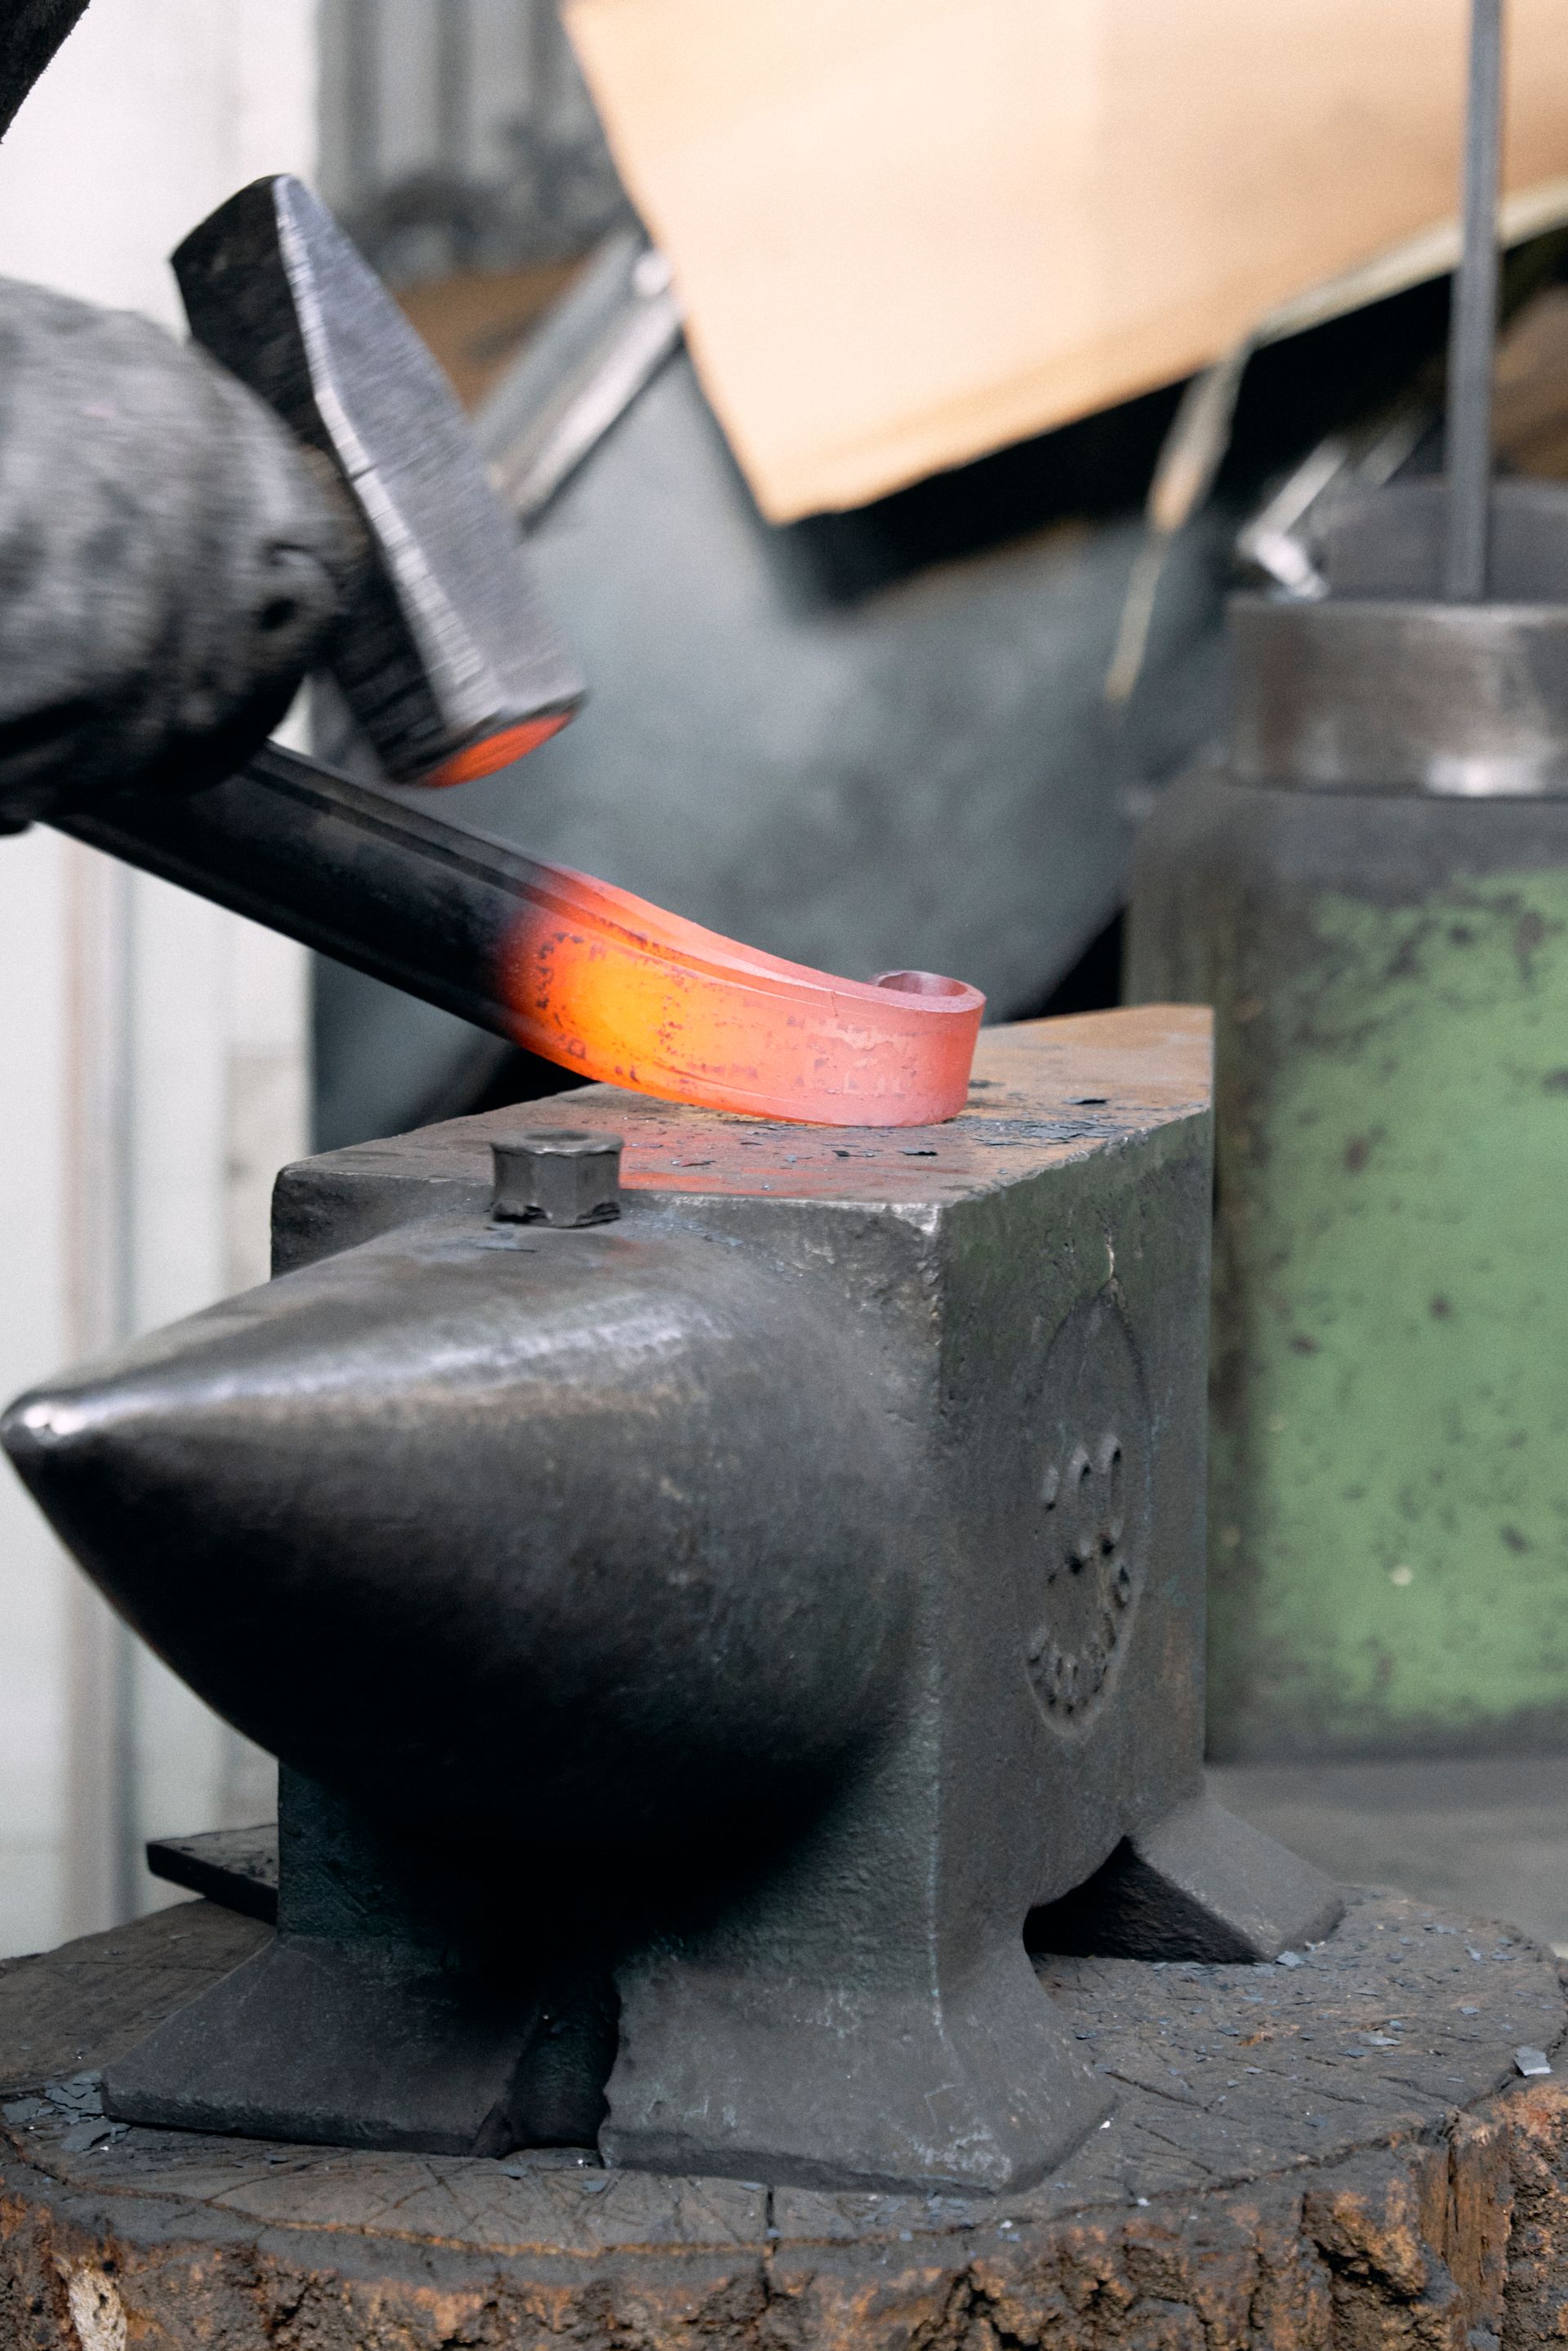 officina magisafi fabbro lavorazione del ferro metallo acciaio struttura metallica carpenteria su misura